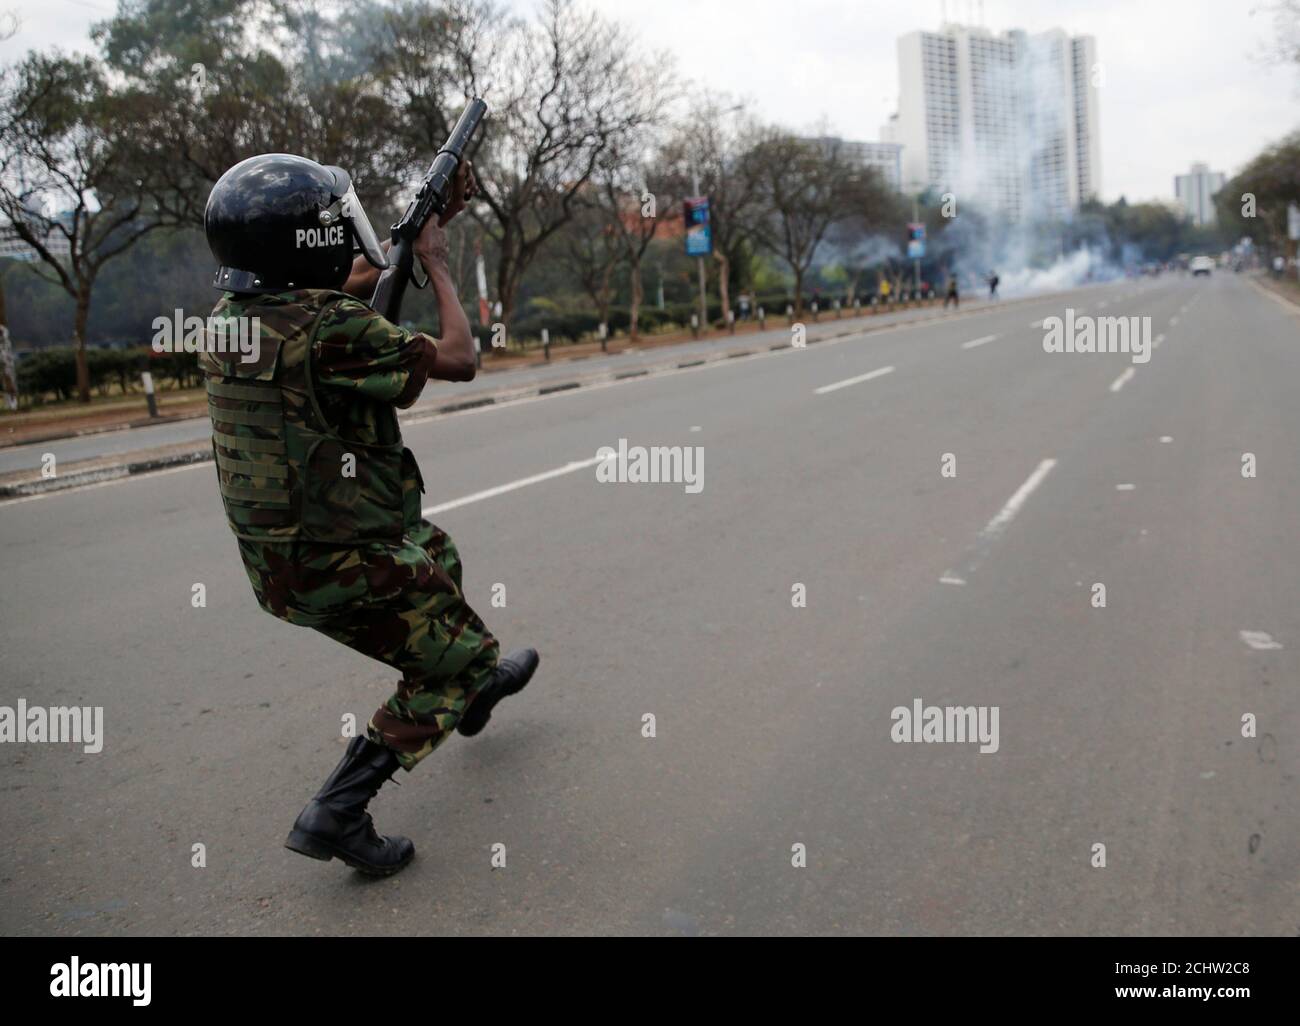 Un policía antidisturbios dispara gases lacrimógenos para dispersar a los partidarios de la coalición de la oposición keniana National Super Alliance (NASA), durante una protesta a lo largo de una calle en Nairobi, Kenia, el 13 de octubre de 2017. REUTERS/Thomas Mukoya Foto de stock